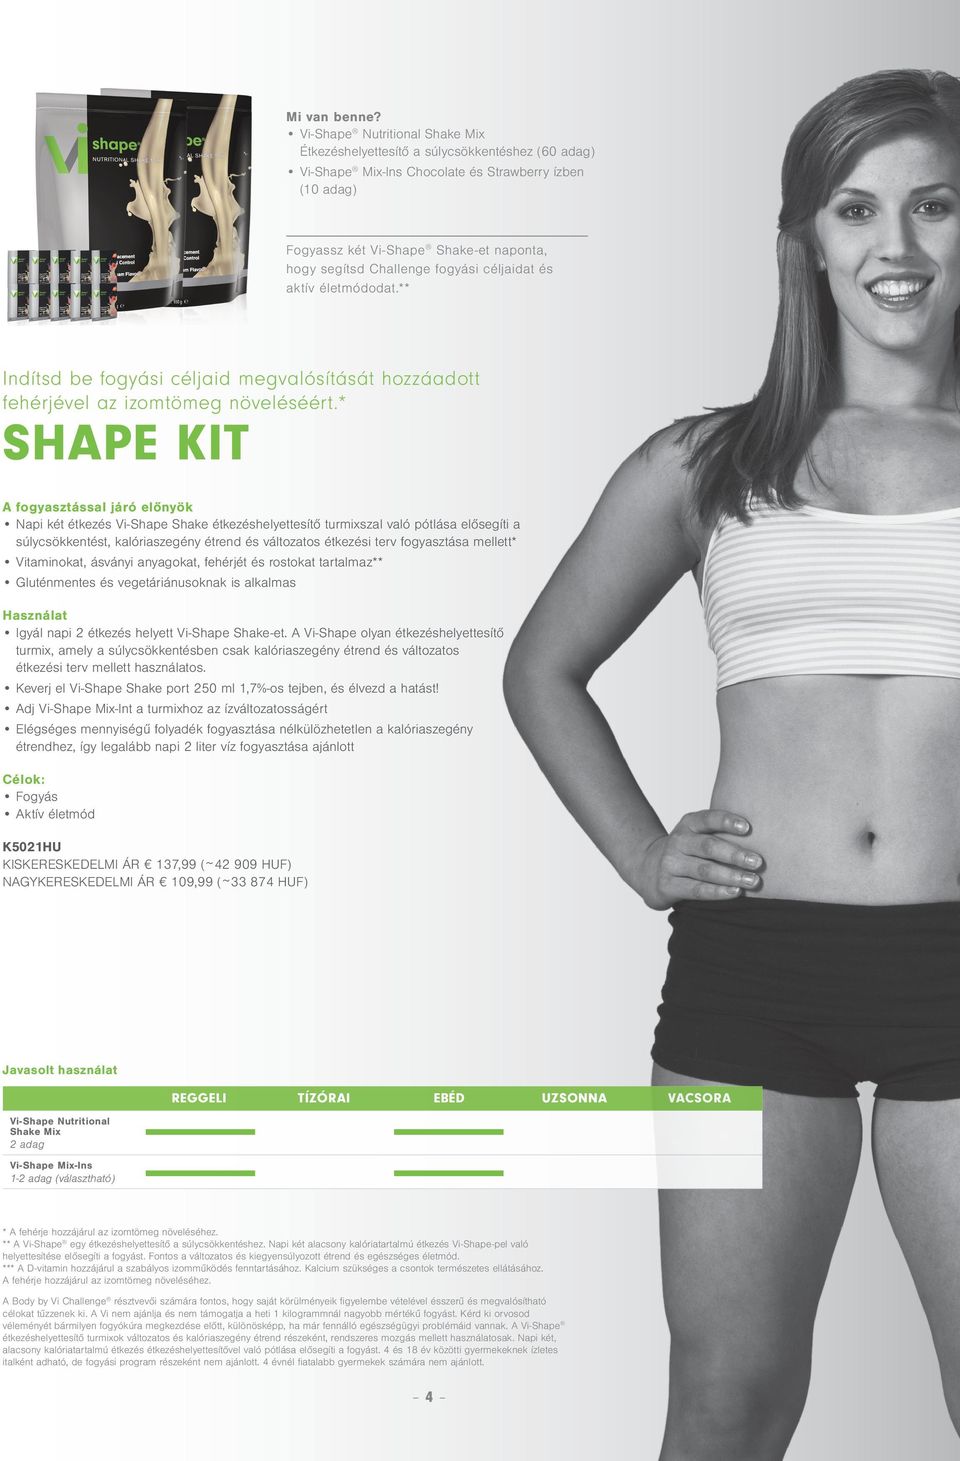 Vi Shape - az egészséges diéta - minden ami fogyás, alakformálás, szépség